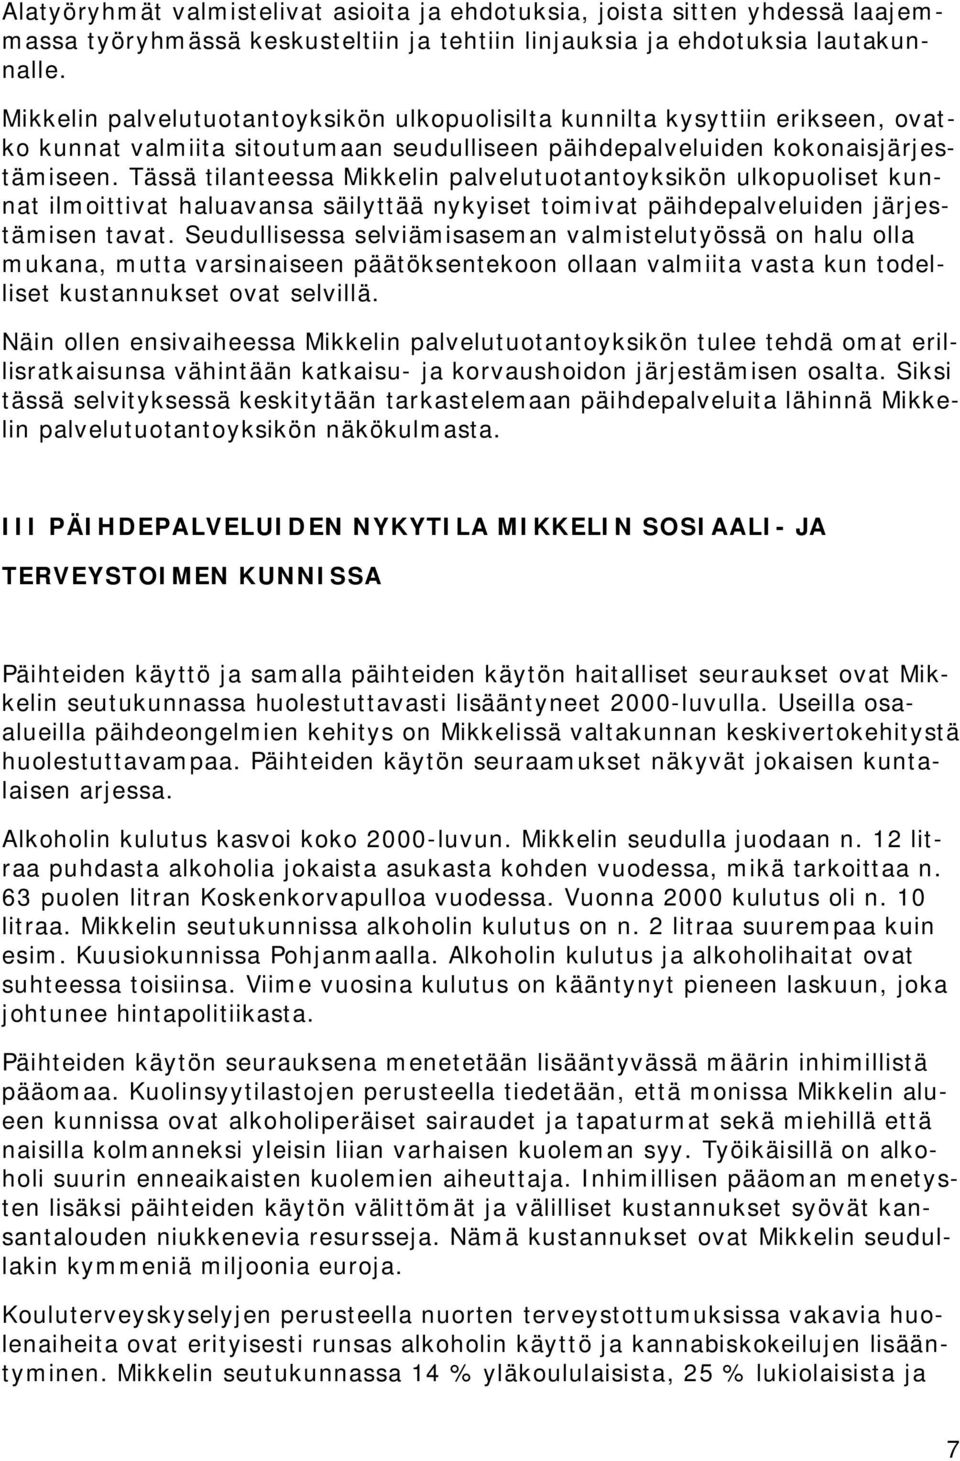 Tässä tilanteessa Mikkelin palvelutuotantoyksikön ulkopuoliset kunnat ilmoittivat haluavansa säilyttää nykyiset toimivat päihdepalveluiden järjestämisen tavat.